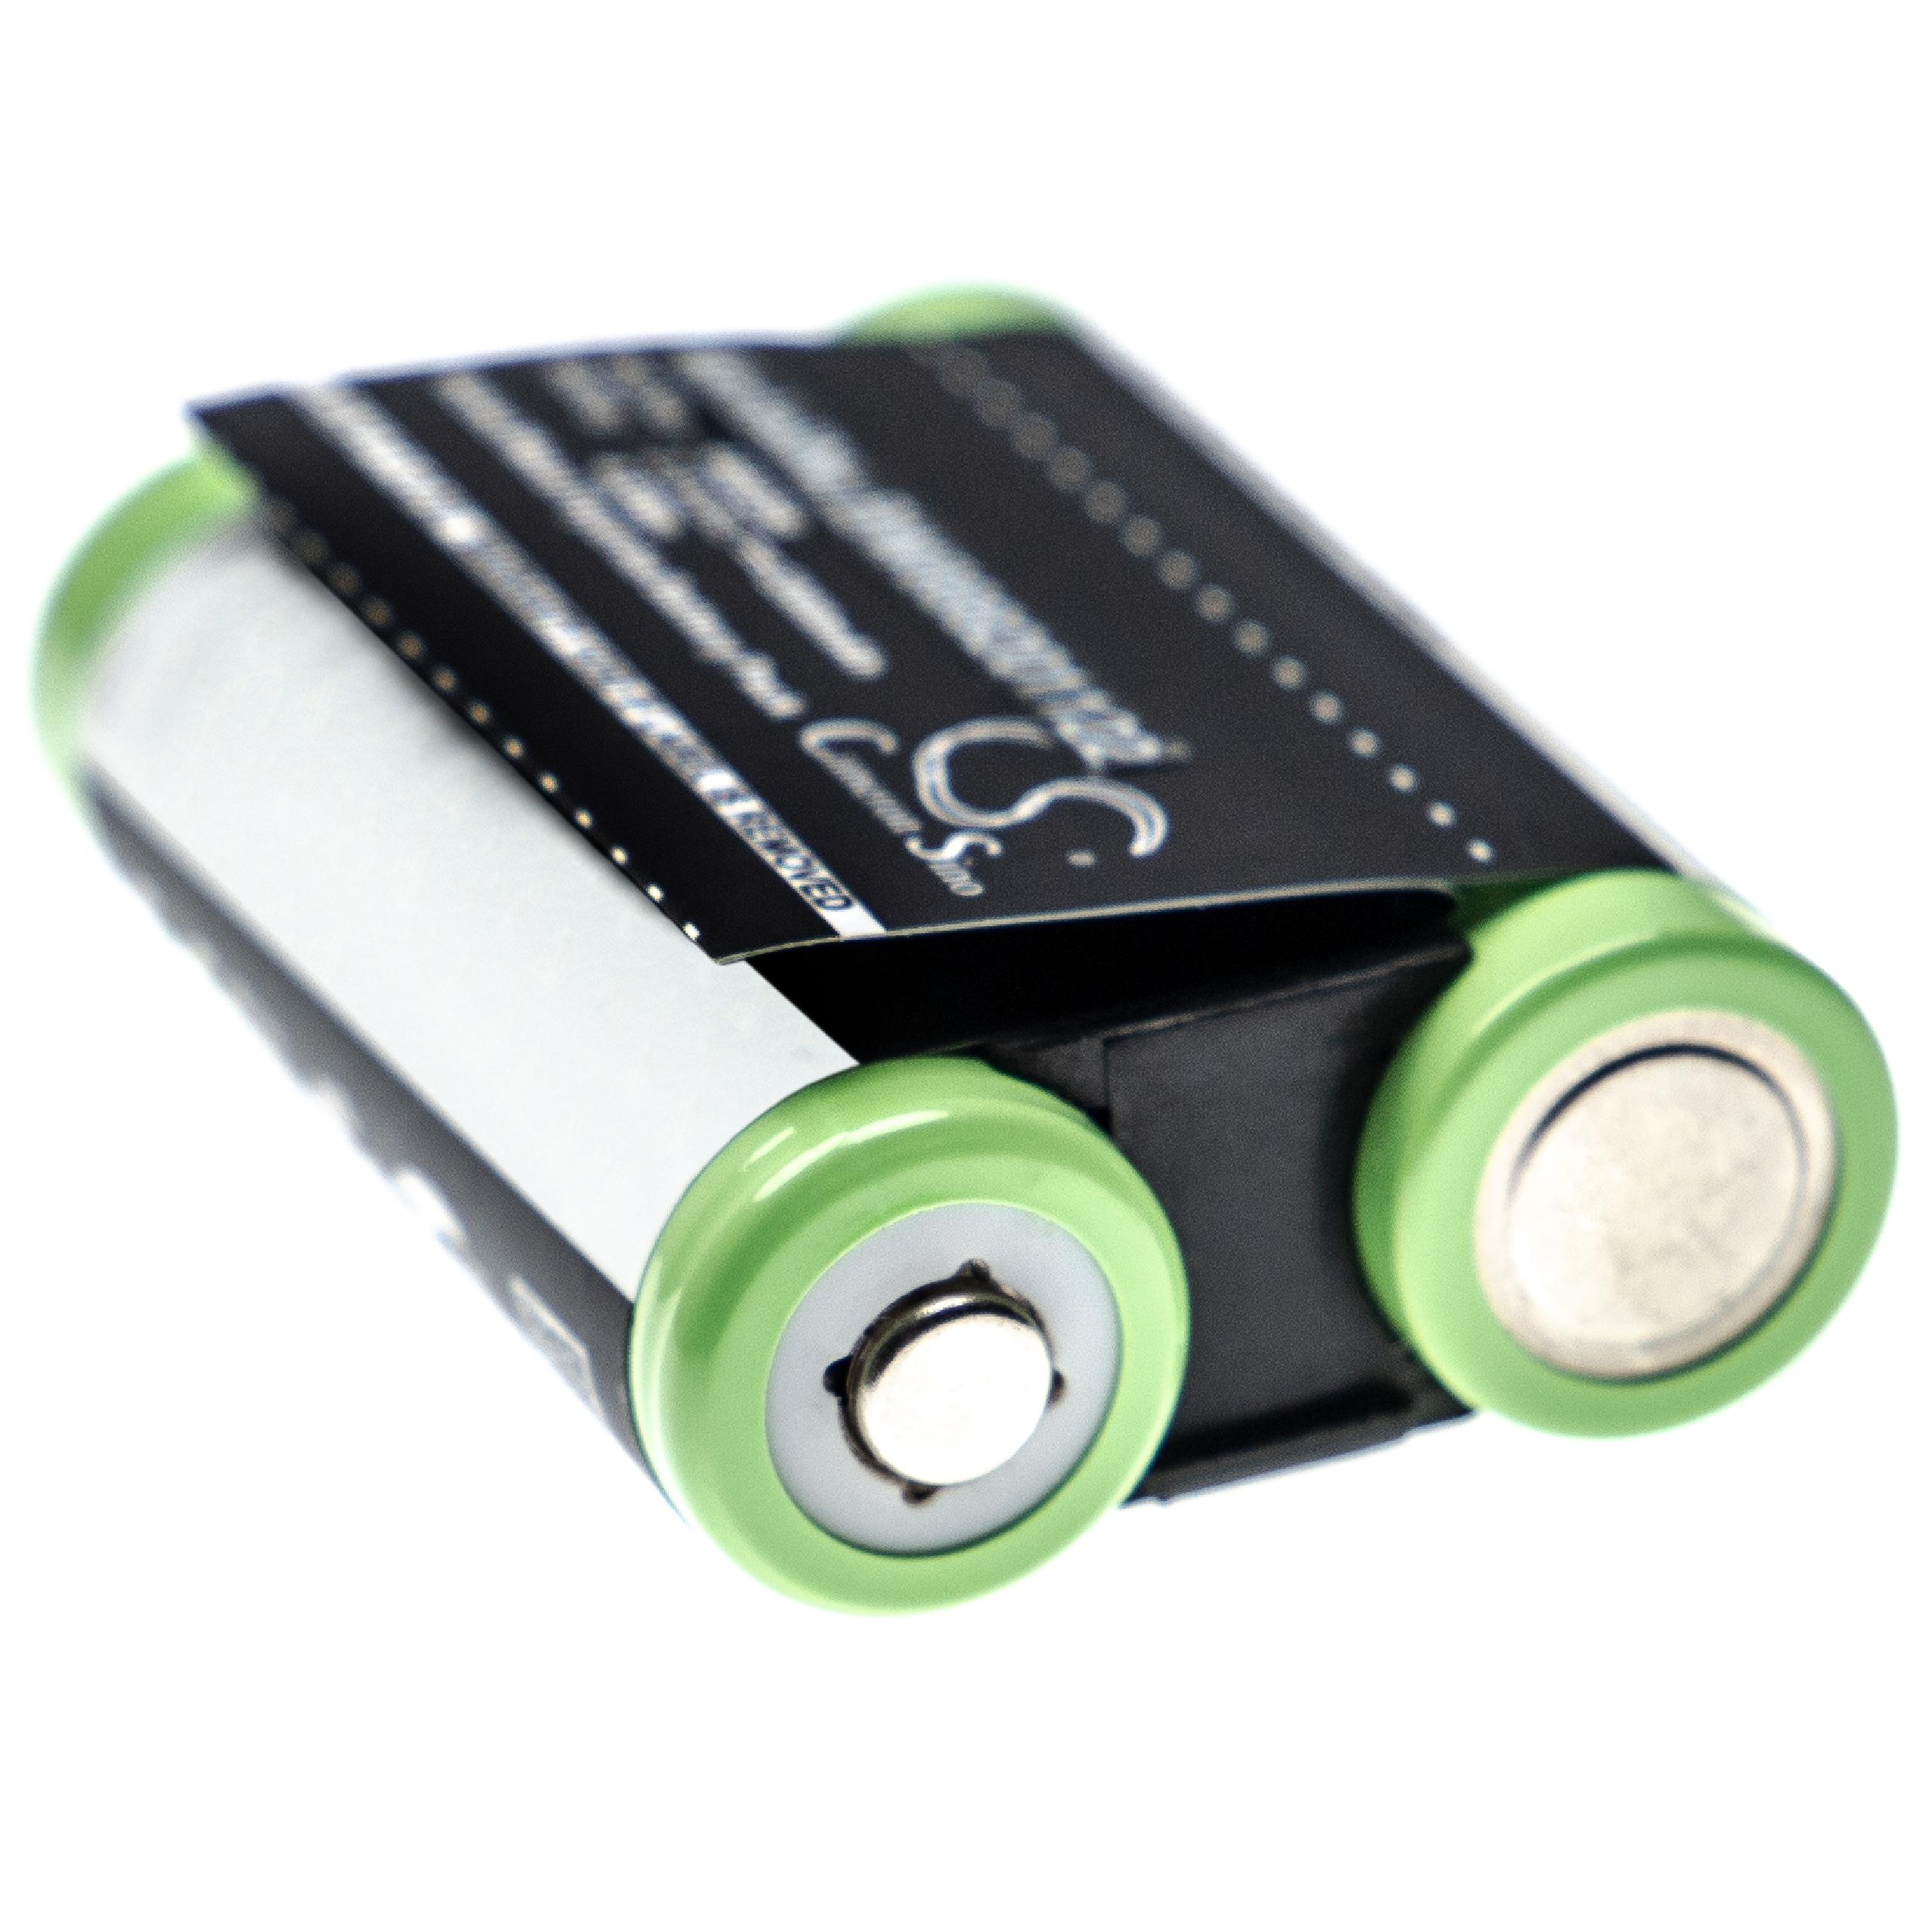 Batterie remplace Optelec 469258, EP-1, LBL-00911A, RFD-01237 pour loupe de lecture - 2000mAh 2,4V NiMH